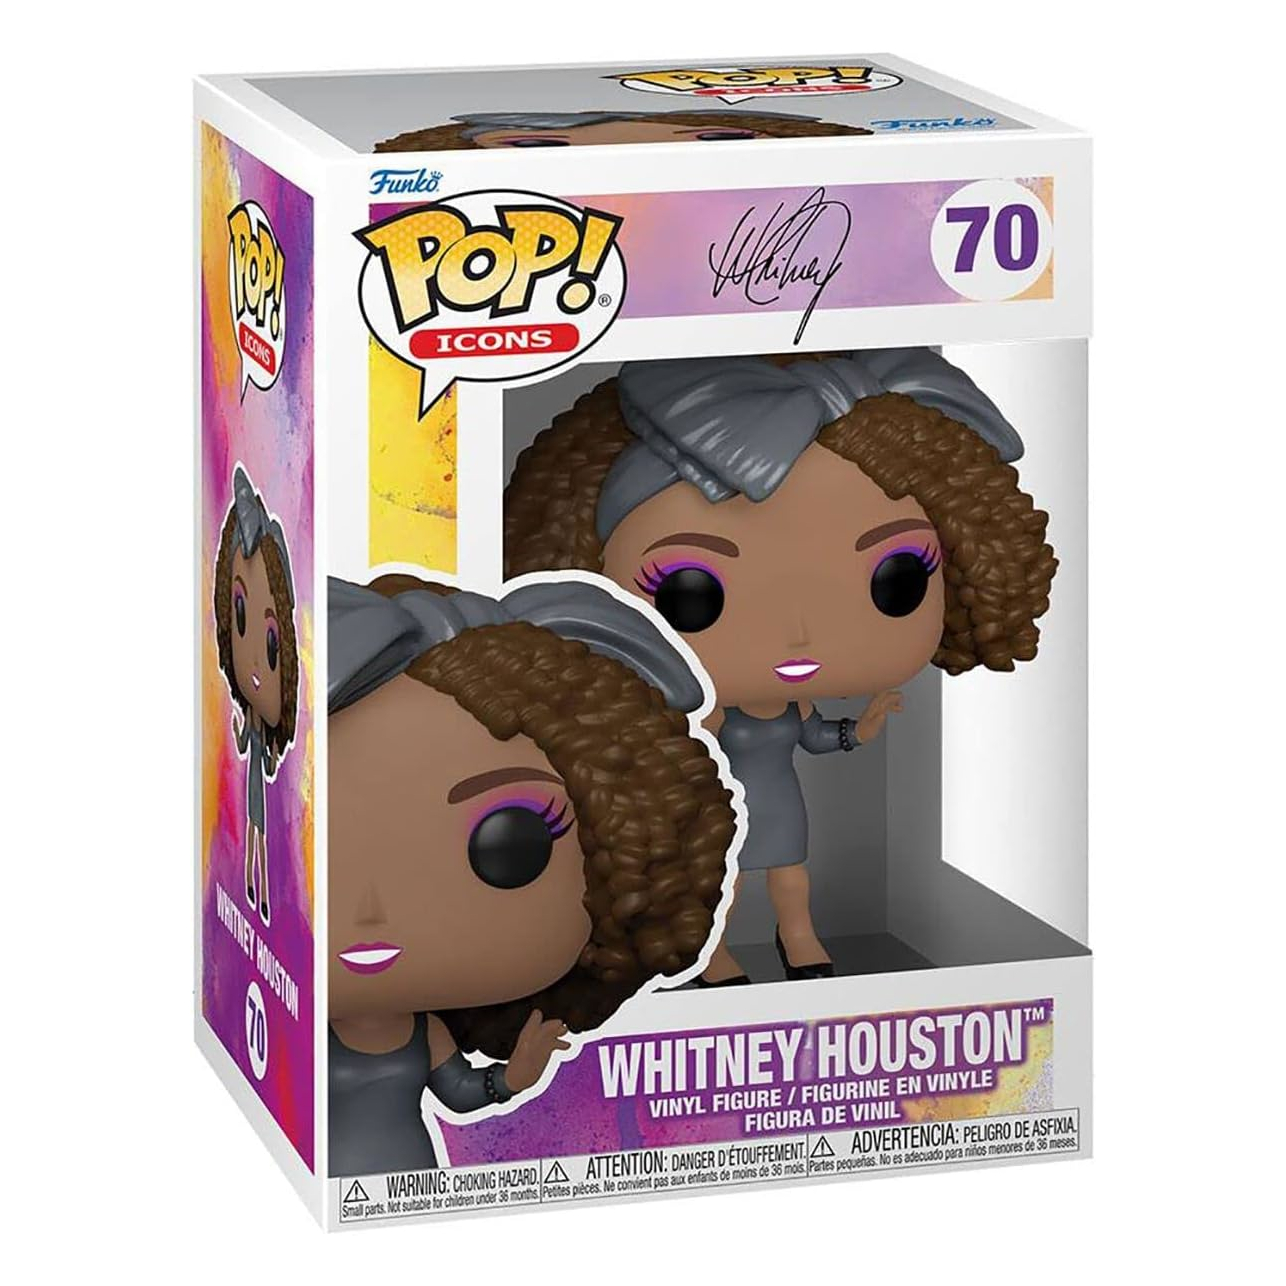 Фигурка Funko Pop! Icons Whitney Houston How Will I Know фигурка funko pop icons whitney houston how will i know 9 5 см